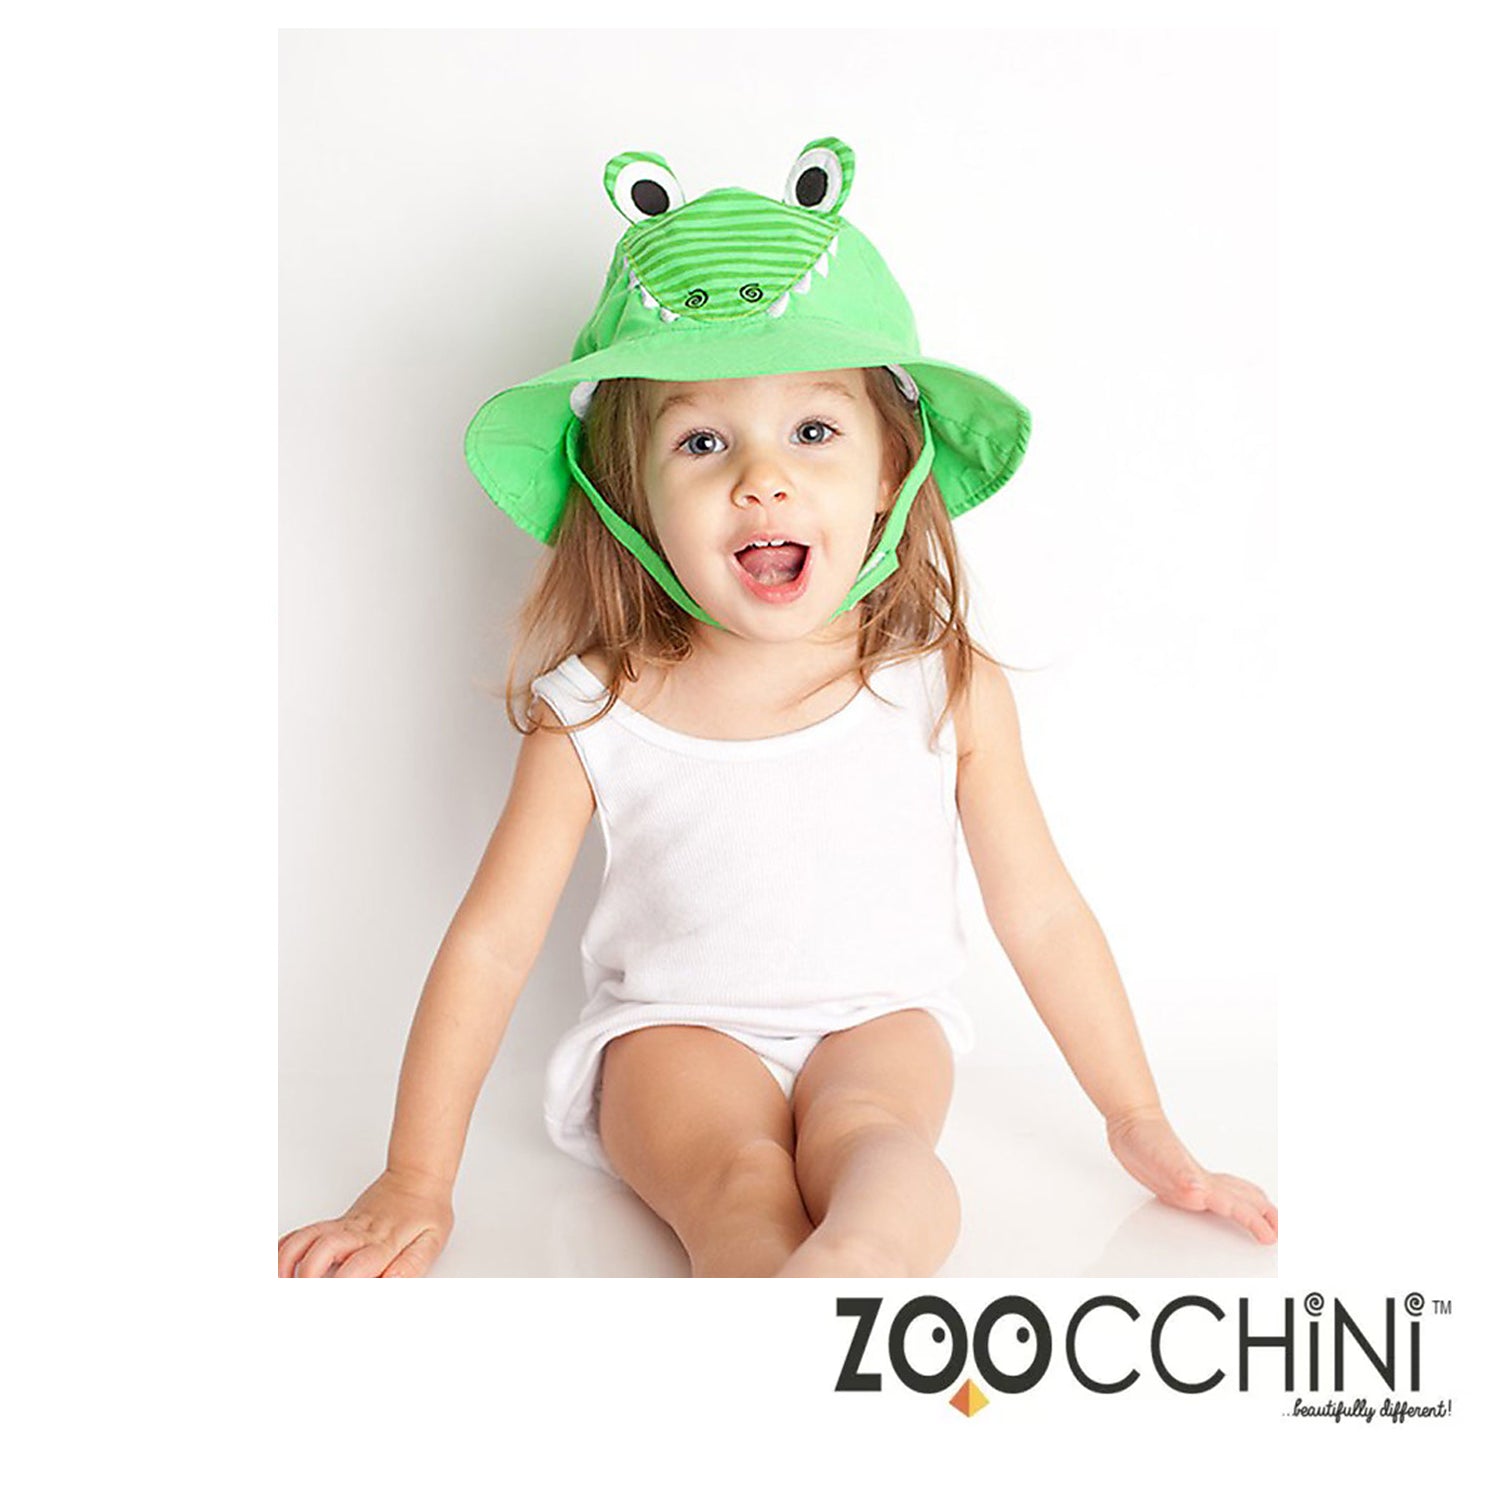 Zoocchini - Cappellino Estivo Baby